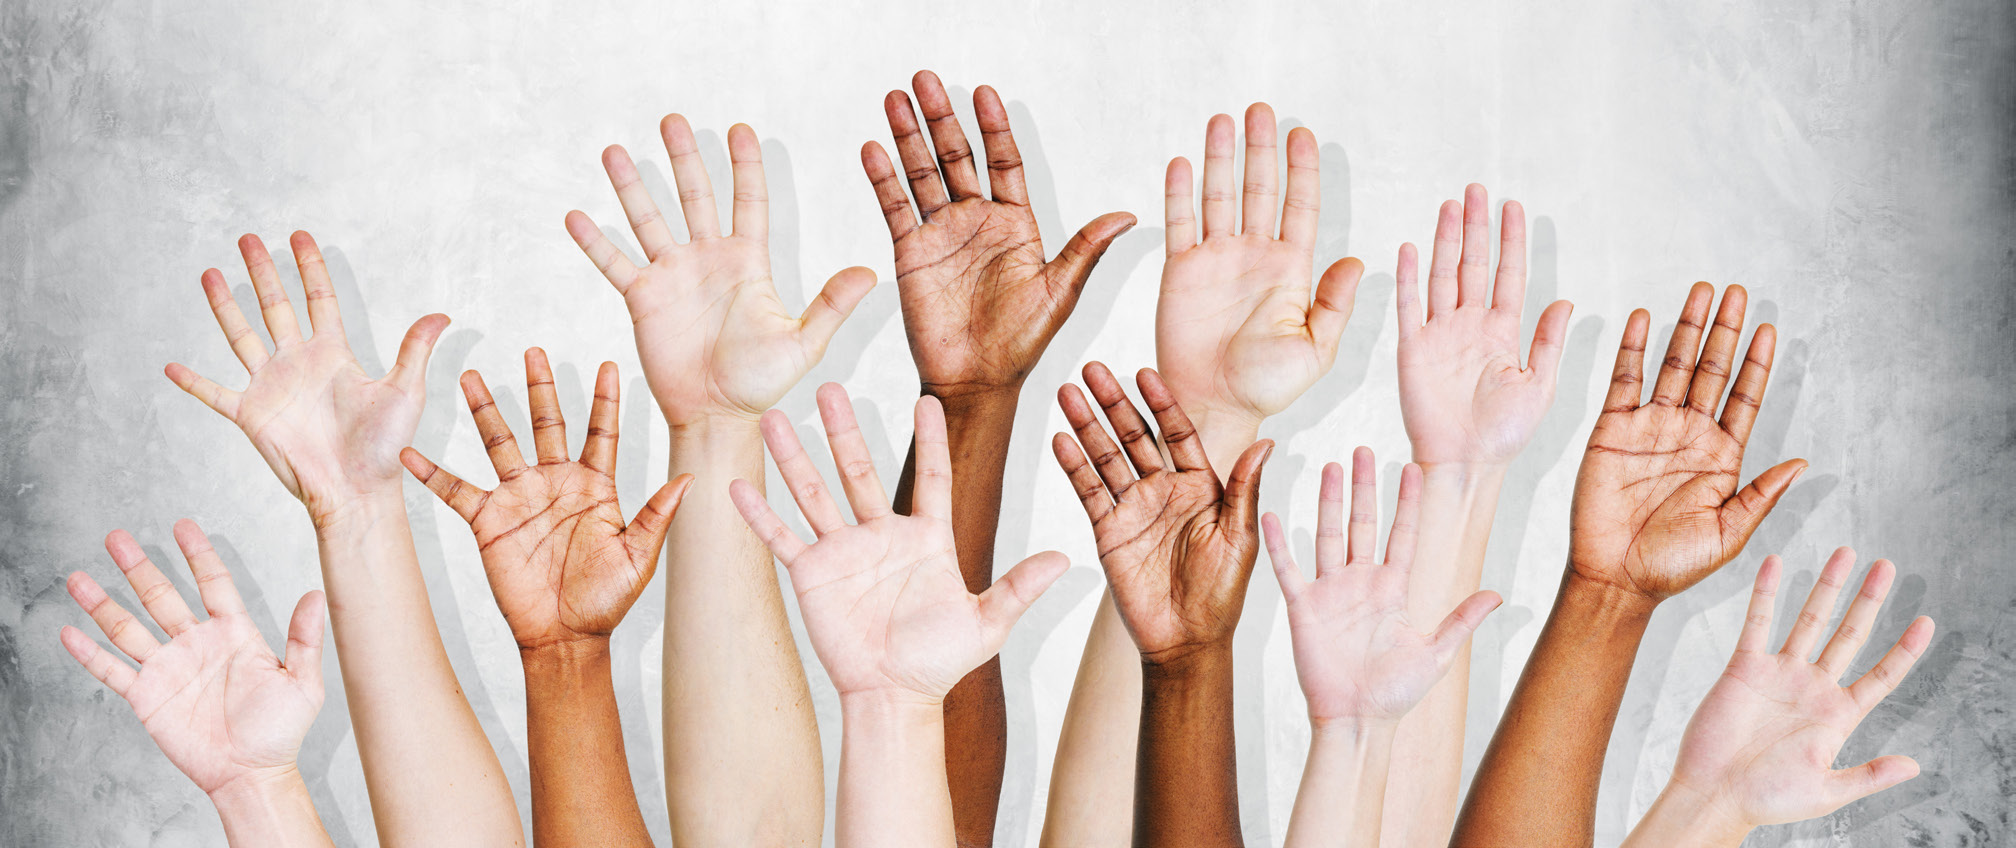 Diversity Hands